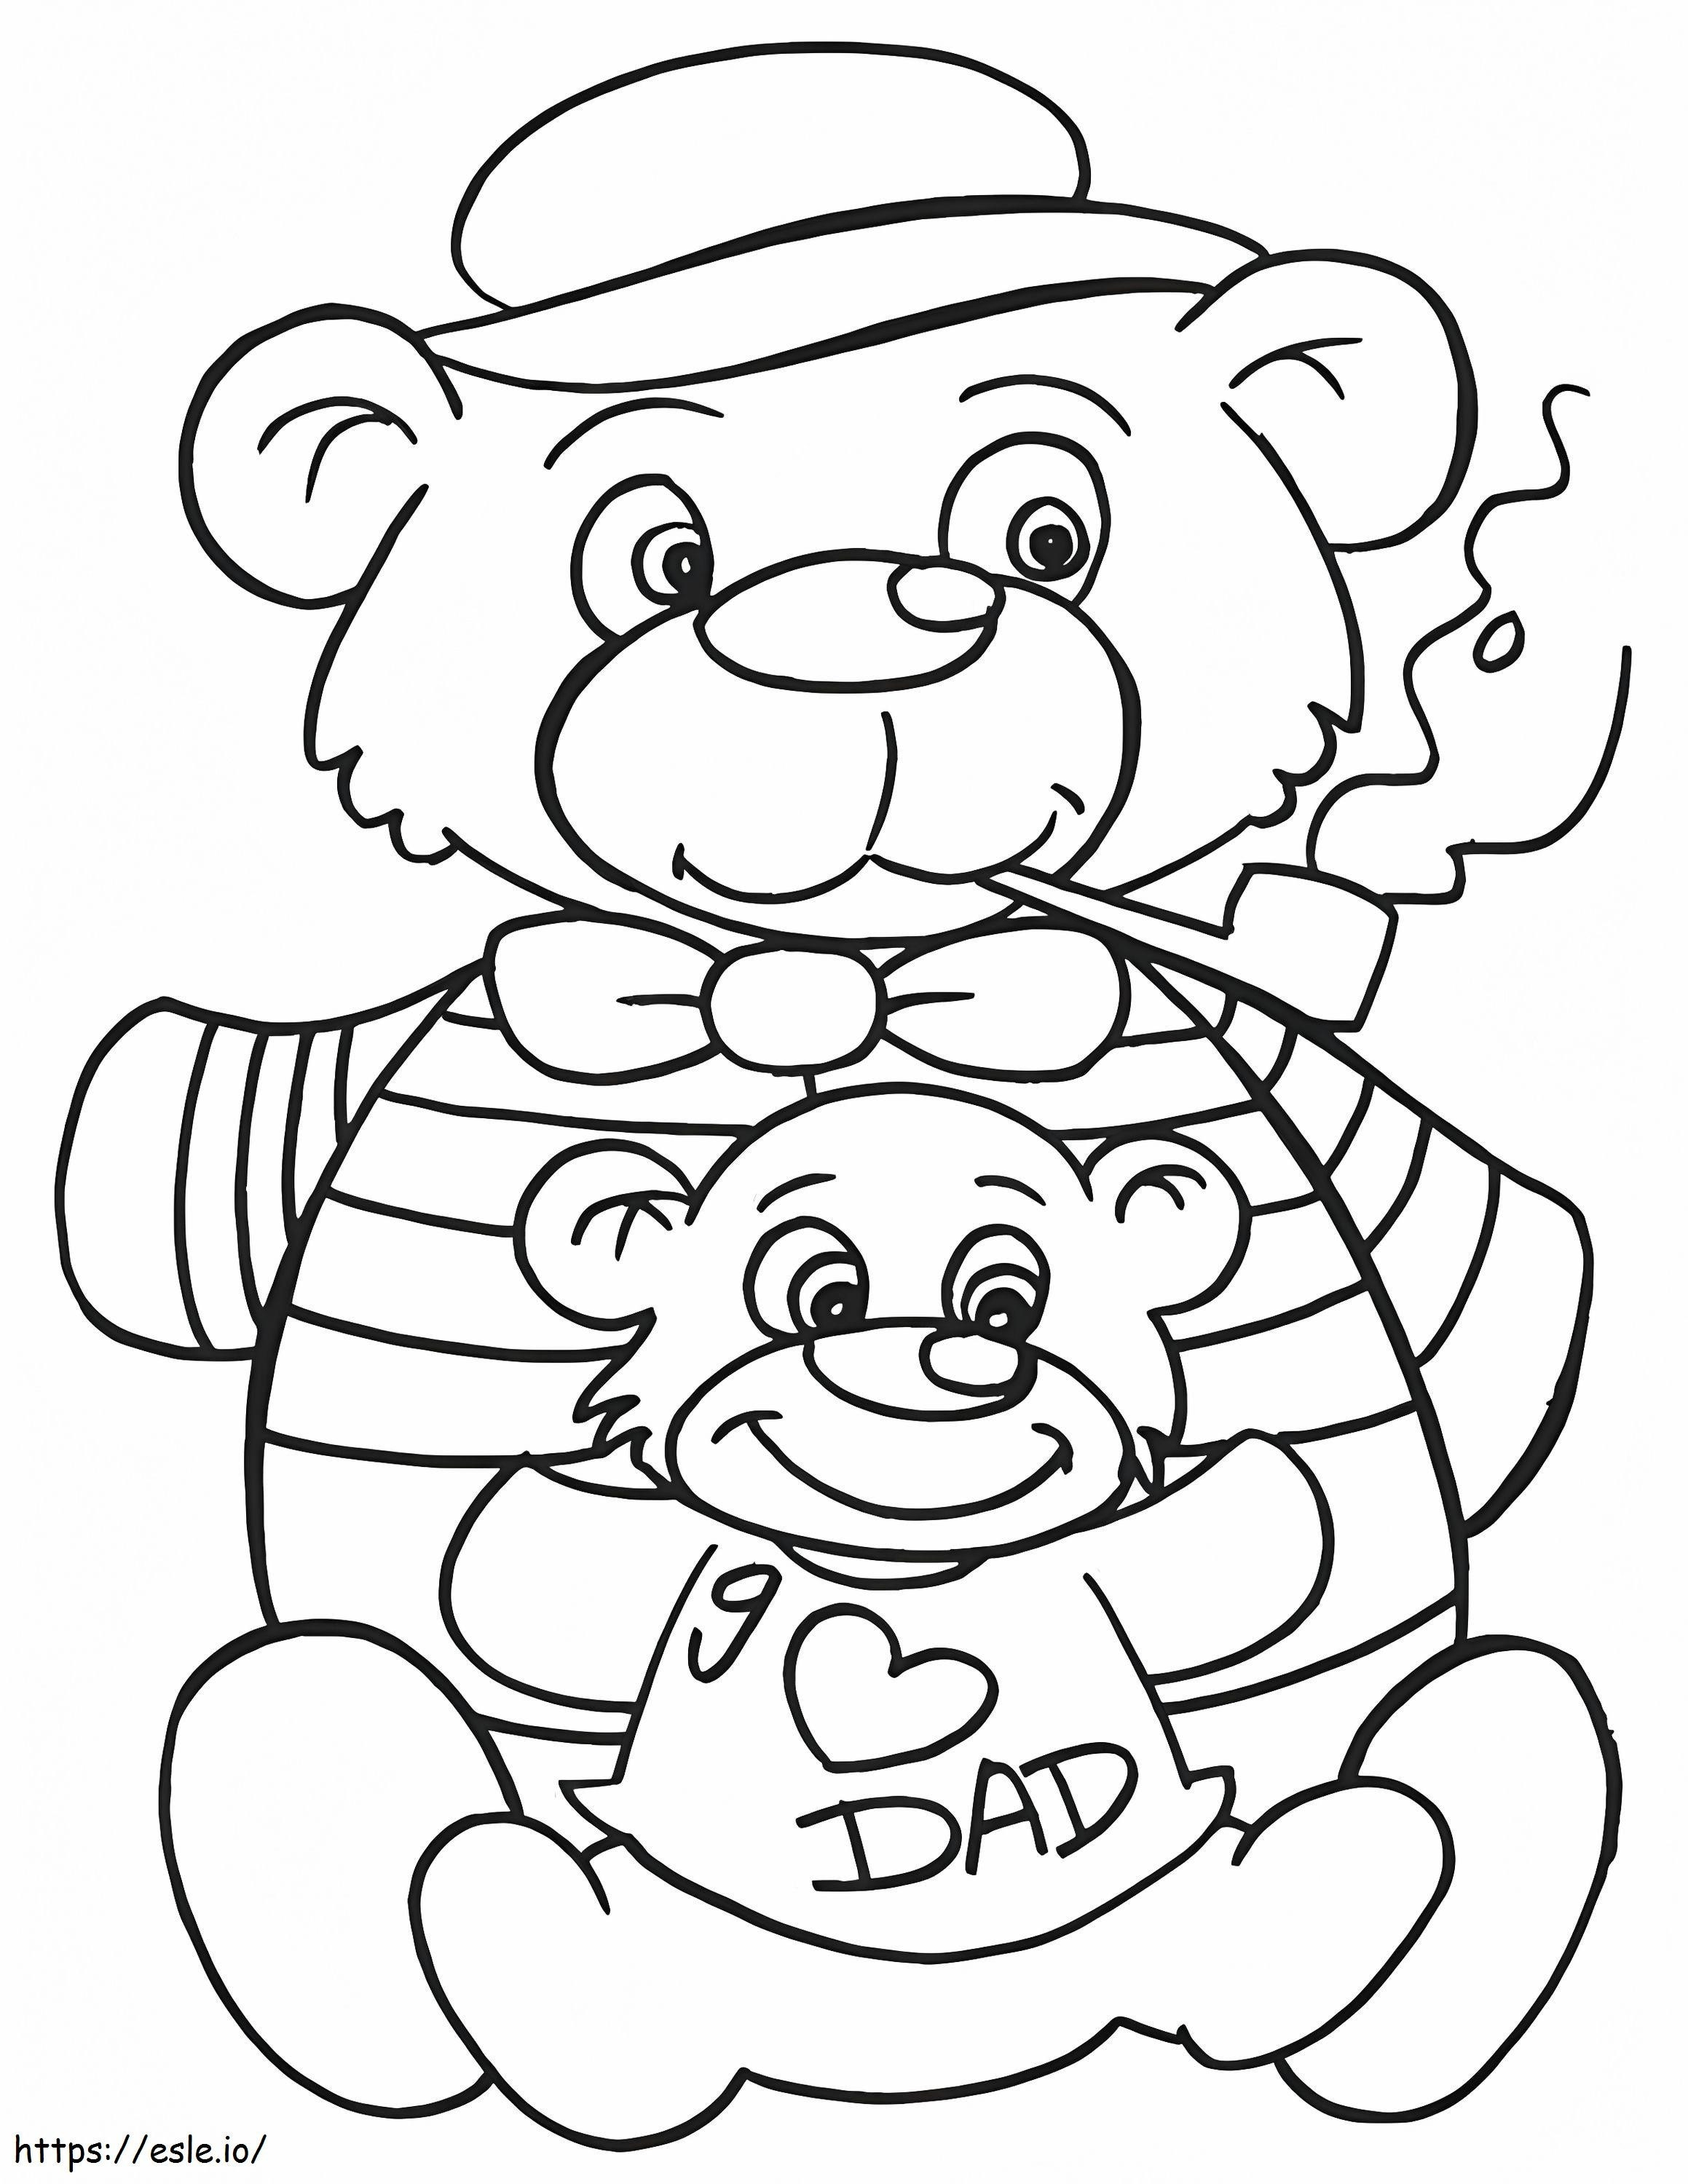 Vater und Sohn Teddybär ausmalbilder